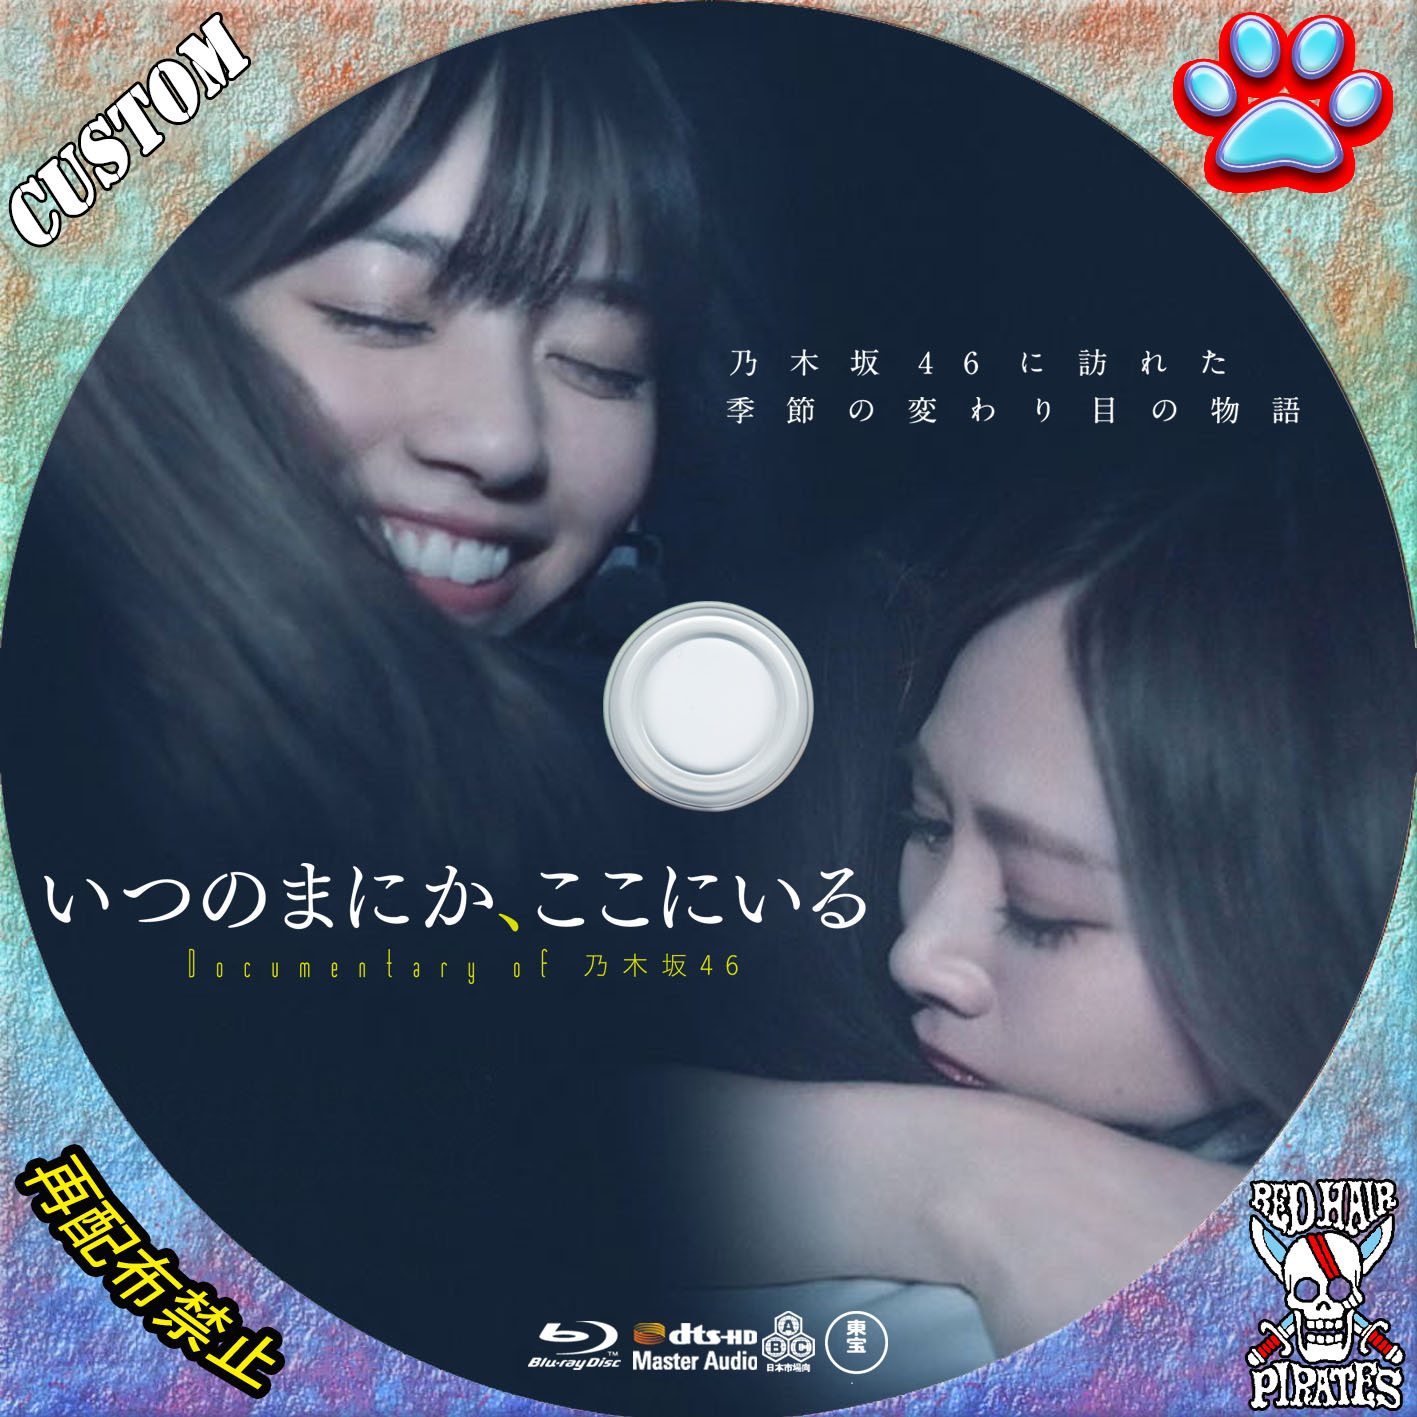 いつのまにか、ここにいる Documentary of 乃木坂46 DVD-